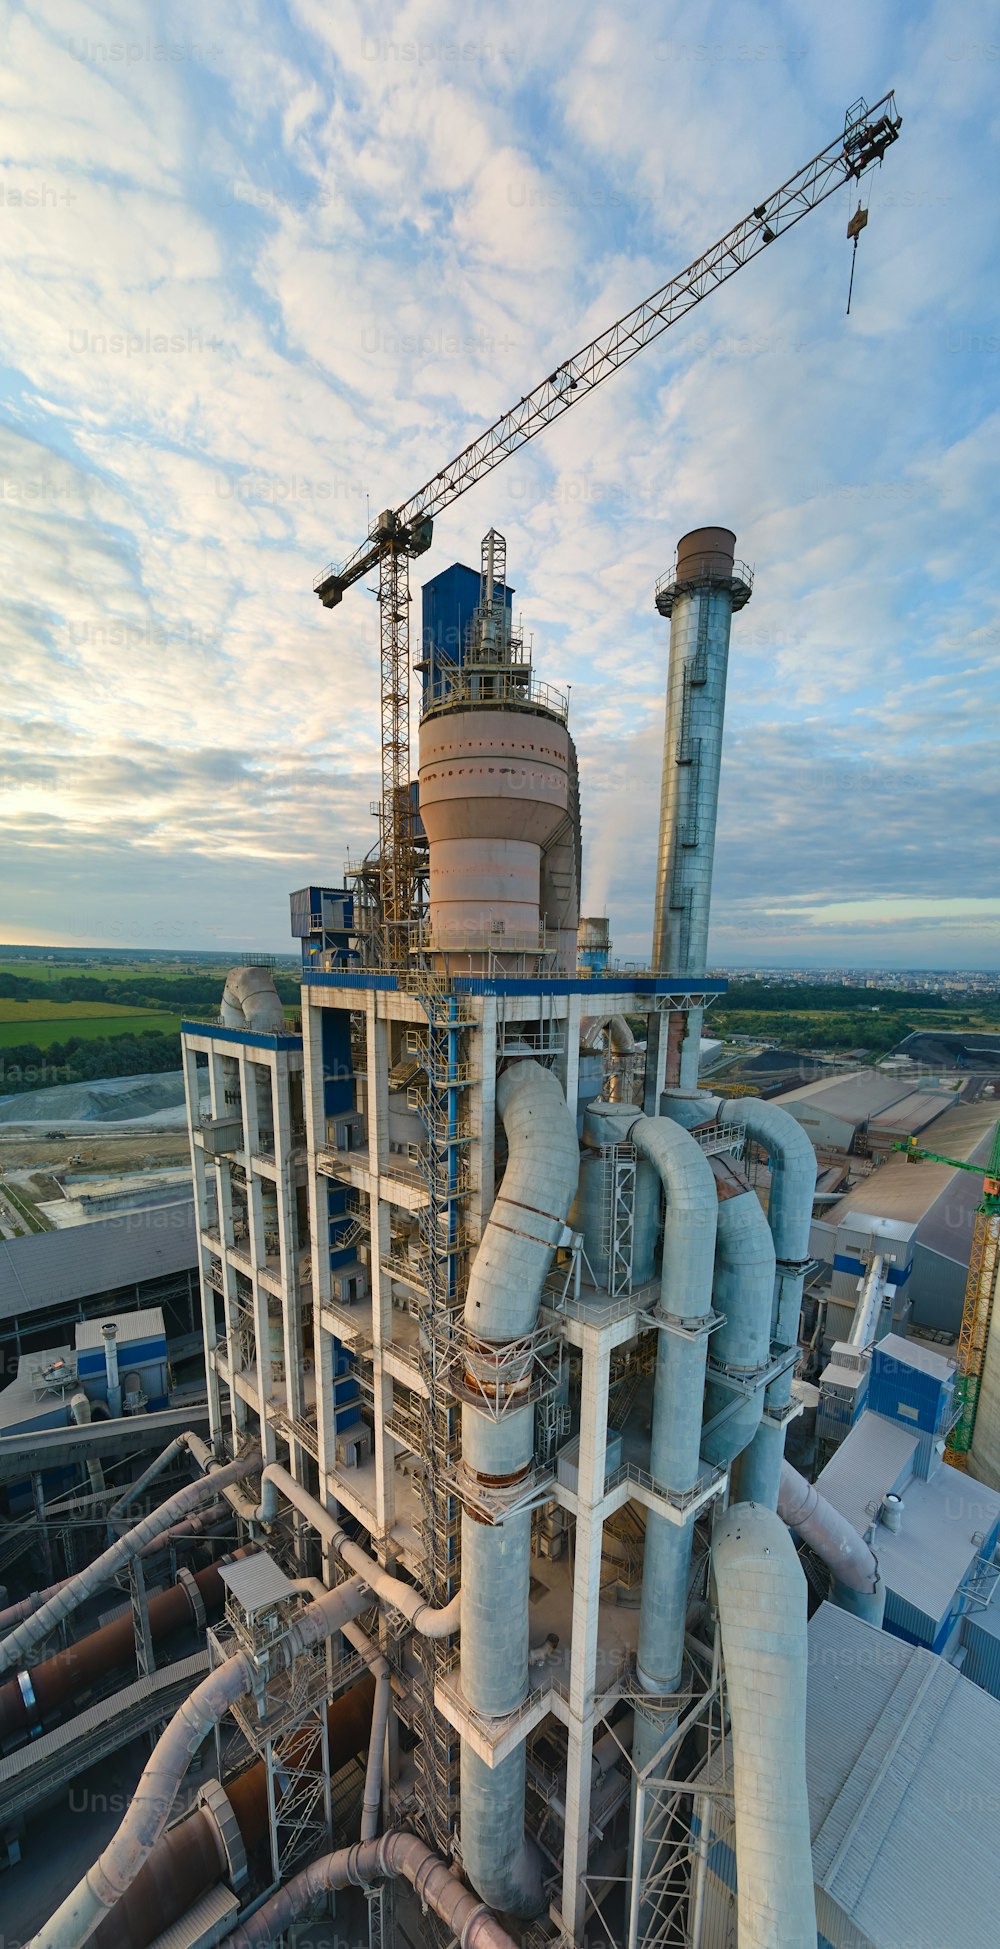 Vue aérienne de l’usine de ciment avec structure de centrale à béton élevée et grue à tour sur le site de production industrielle. Concept de fabrication et d’industrie mondiale.